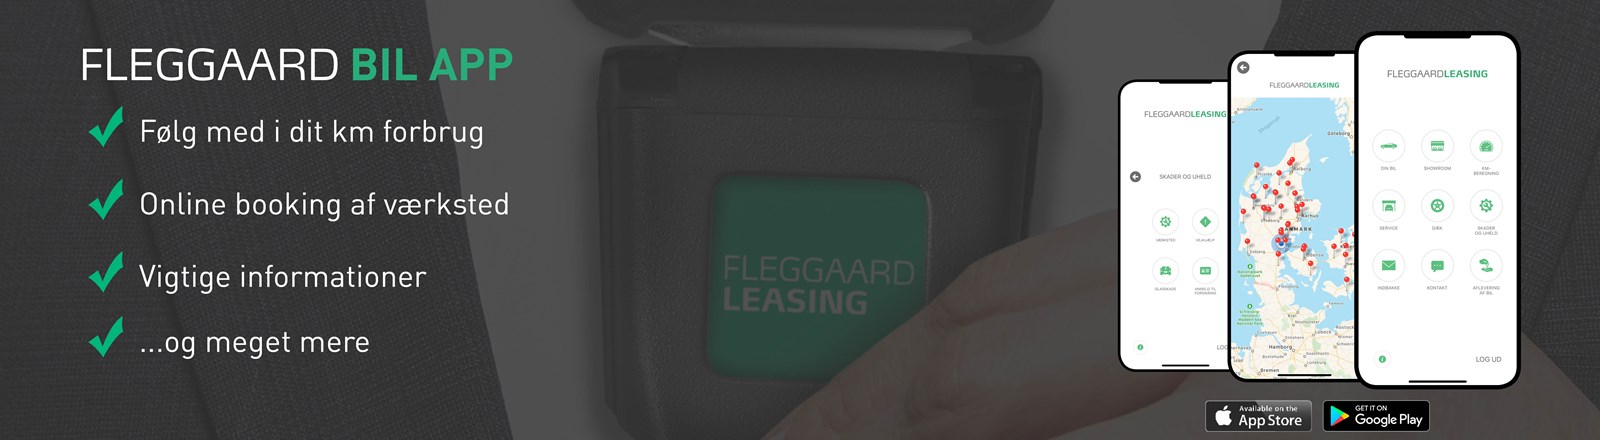 Fleggaard Leasing - Bil App.jpg (4)